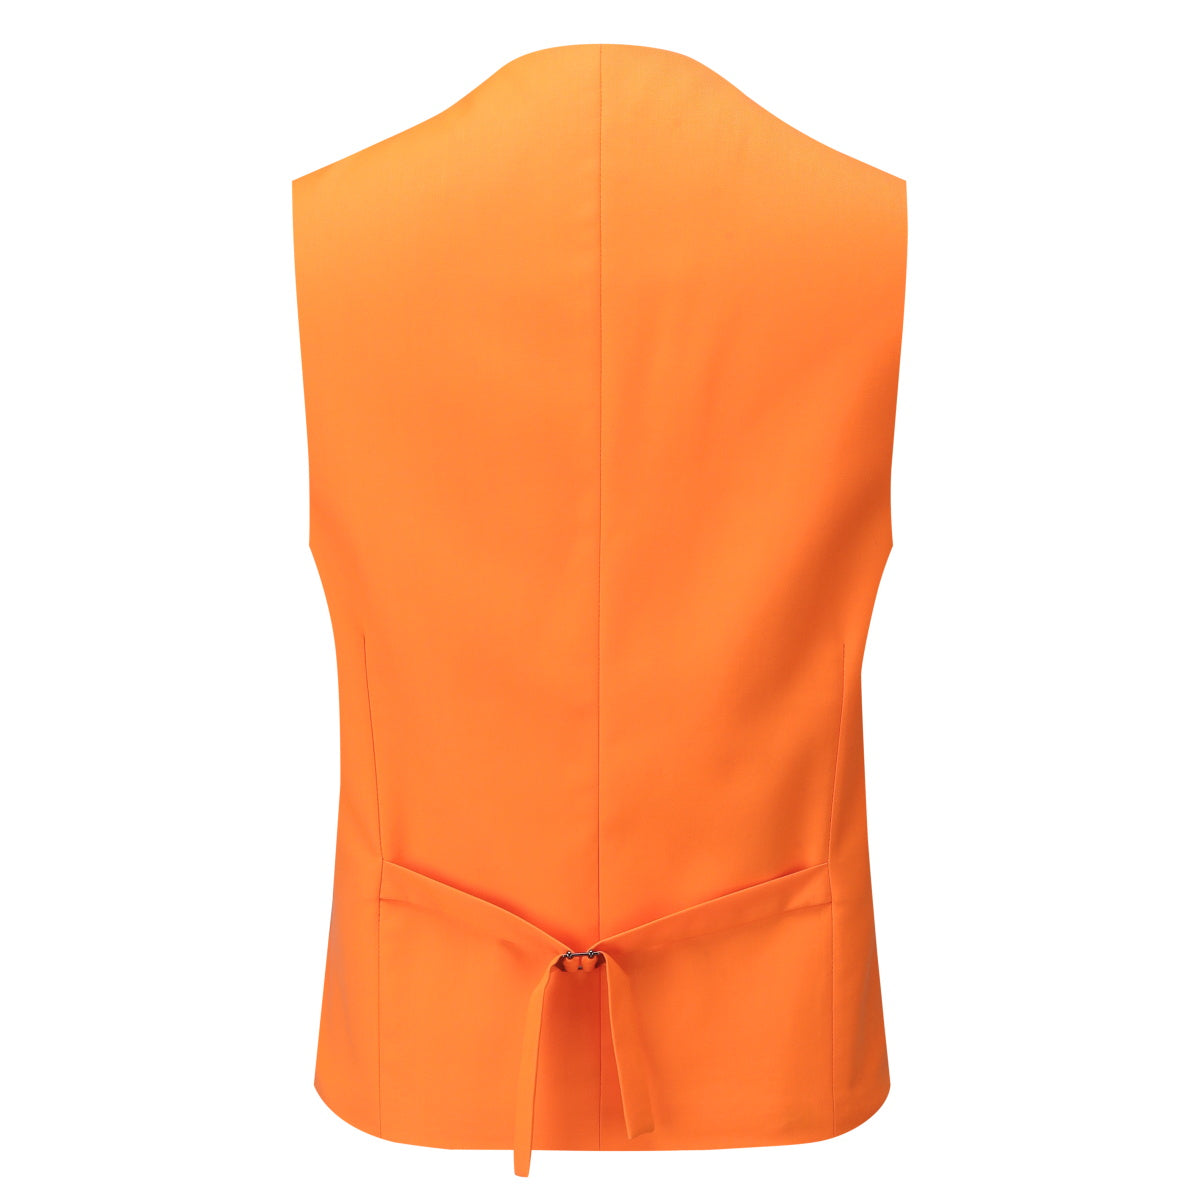 3-Piece Notched Lapel Casual Suit Orange